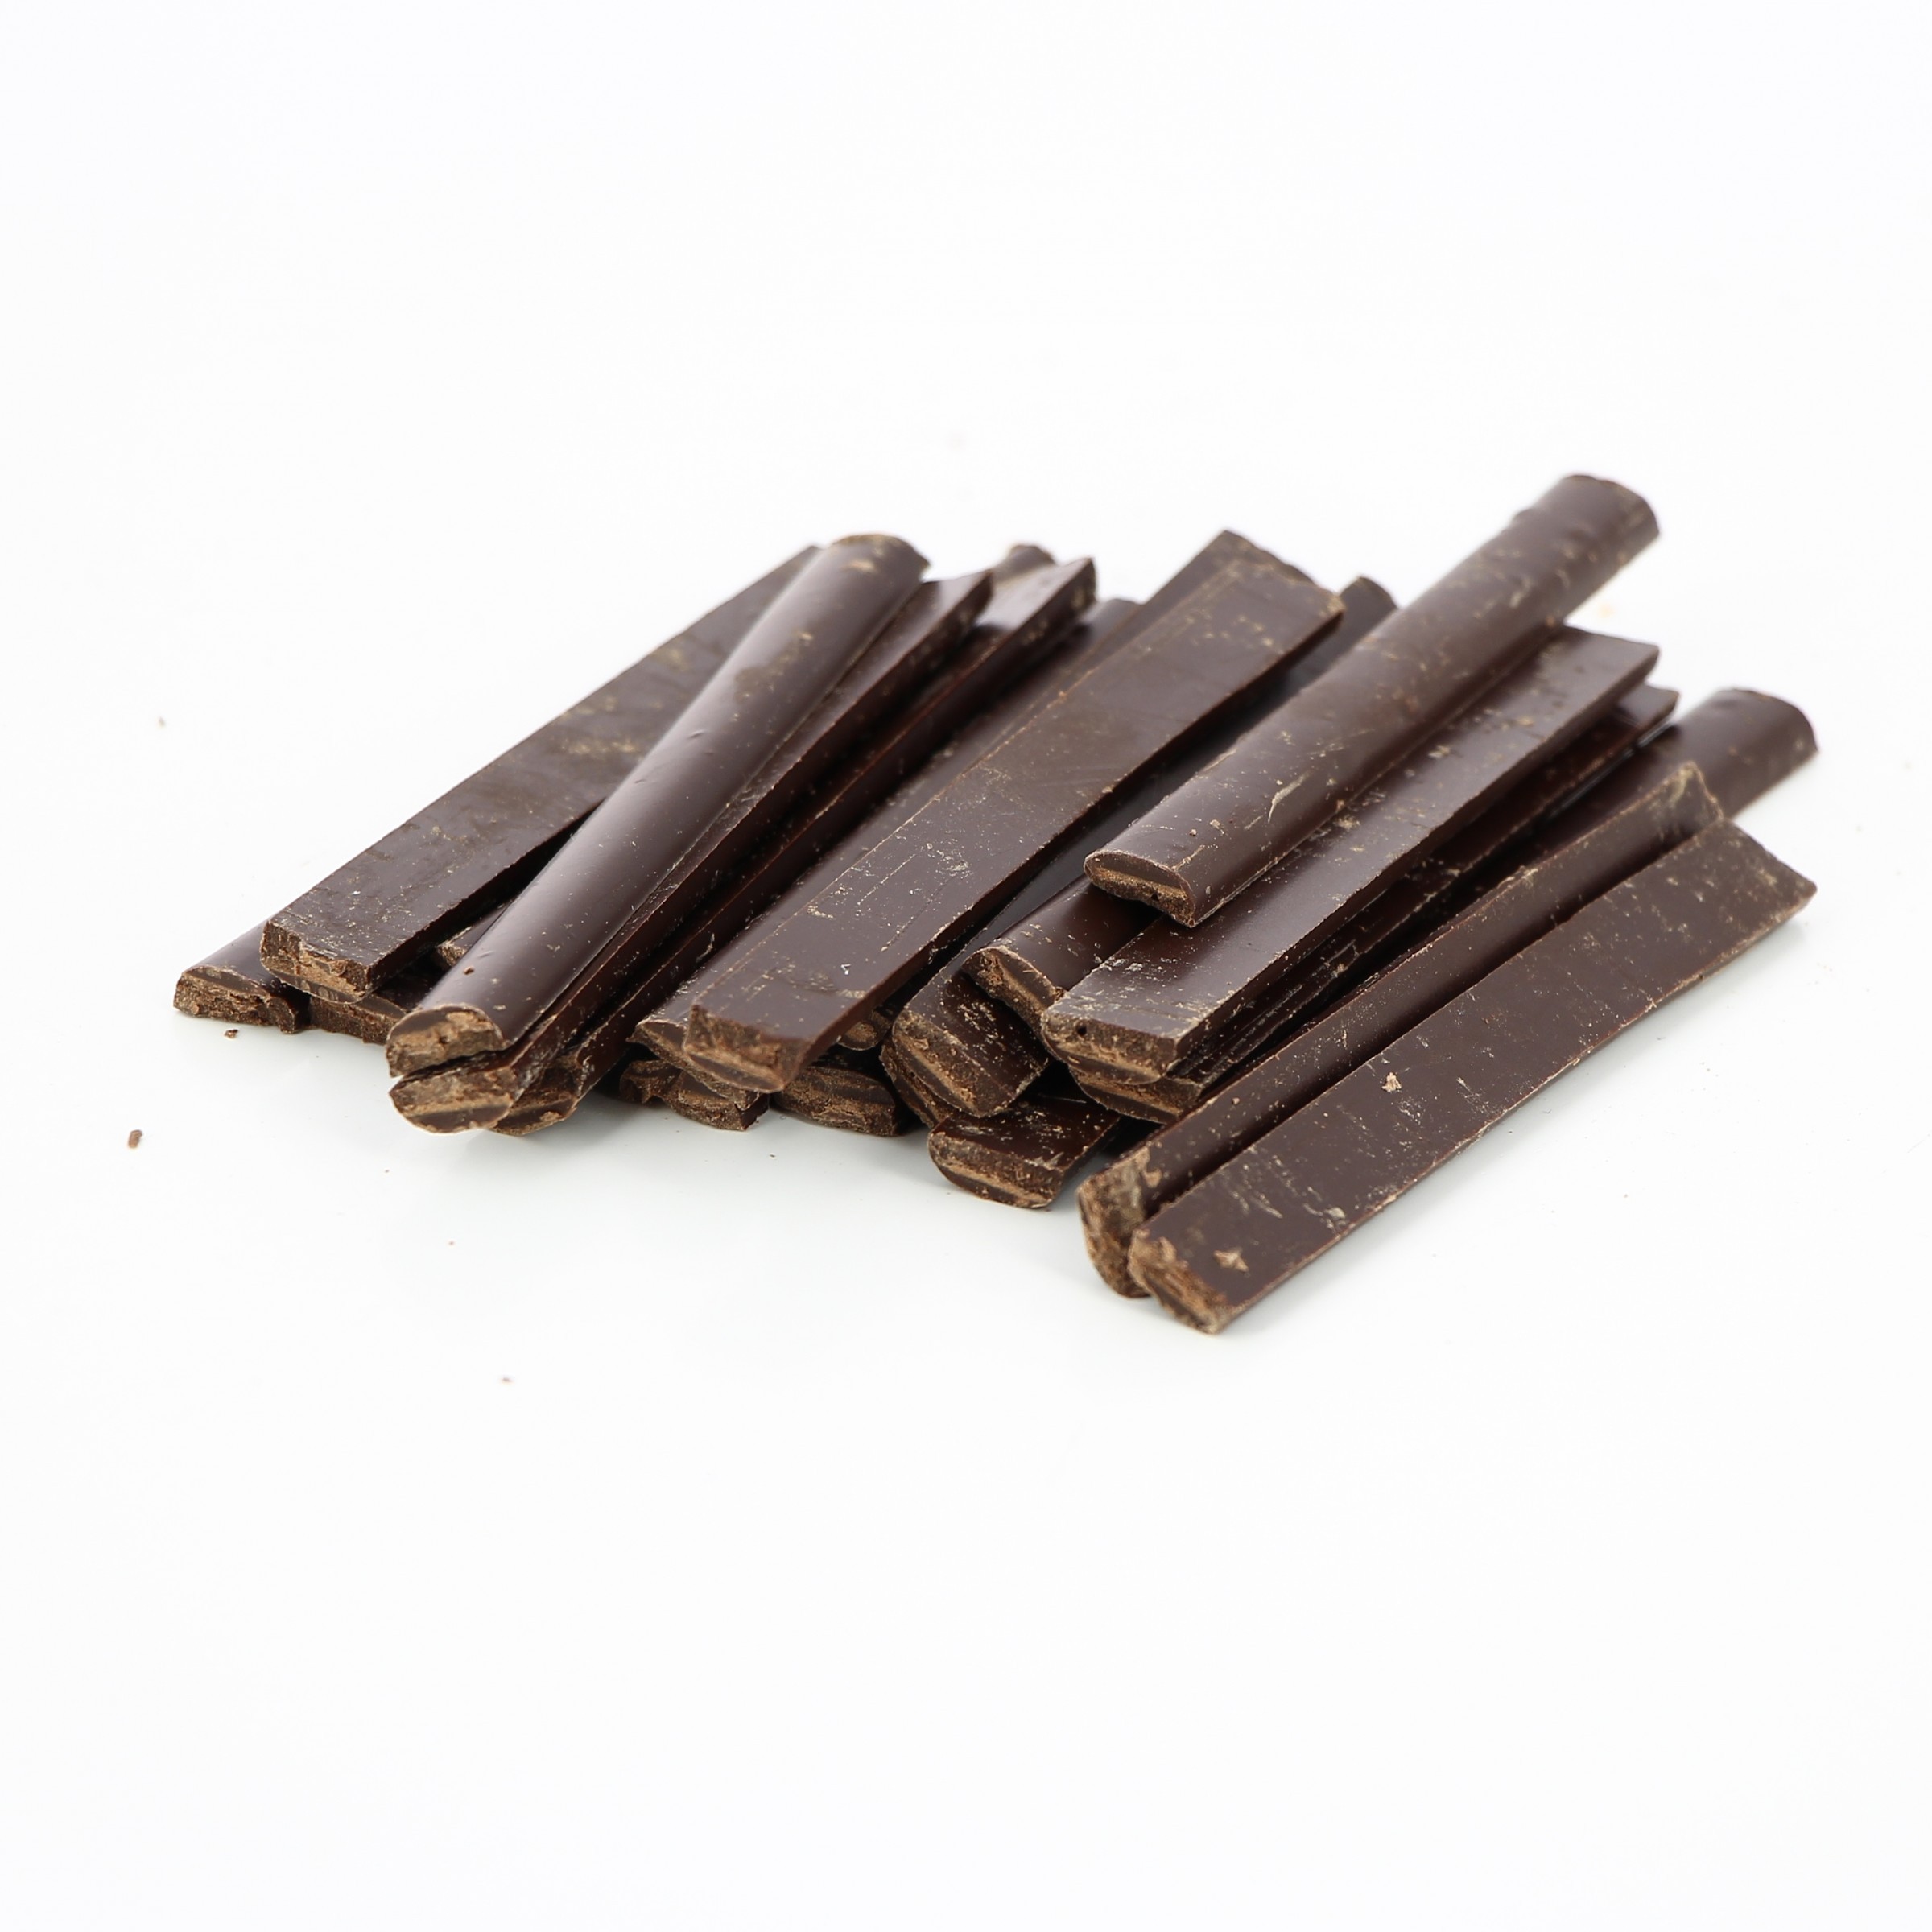 https://www.laboutiquedeschefs.com/media/images/products/w-2400-h-2400-zc-5-batons-de-chocolat-58-weiss-16-kg-pour-pains-au-chocolat-4-1562232179.jpg